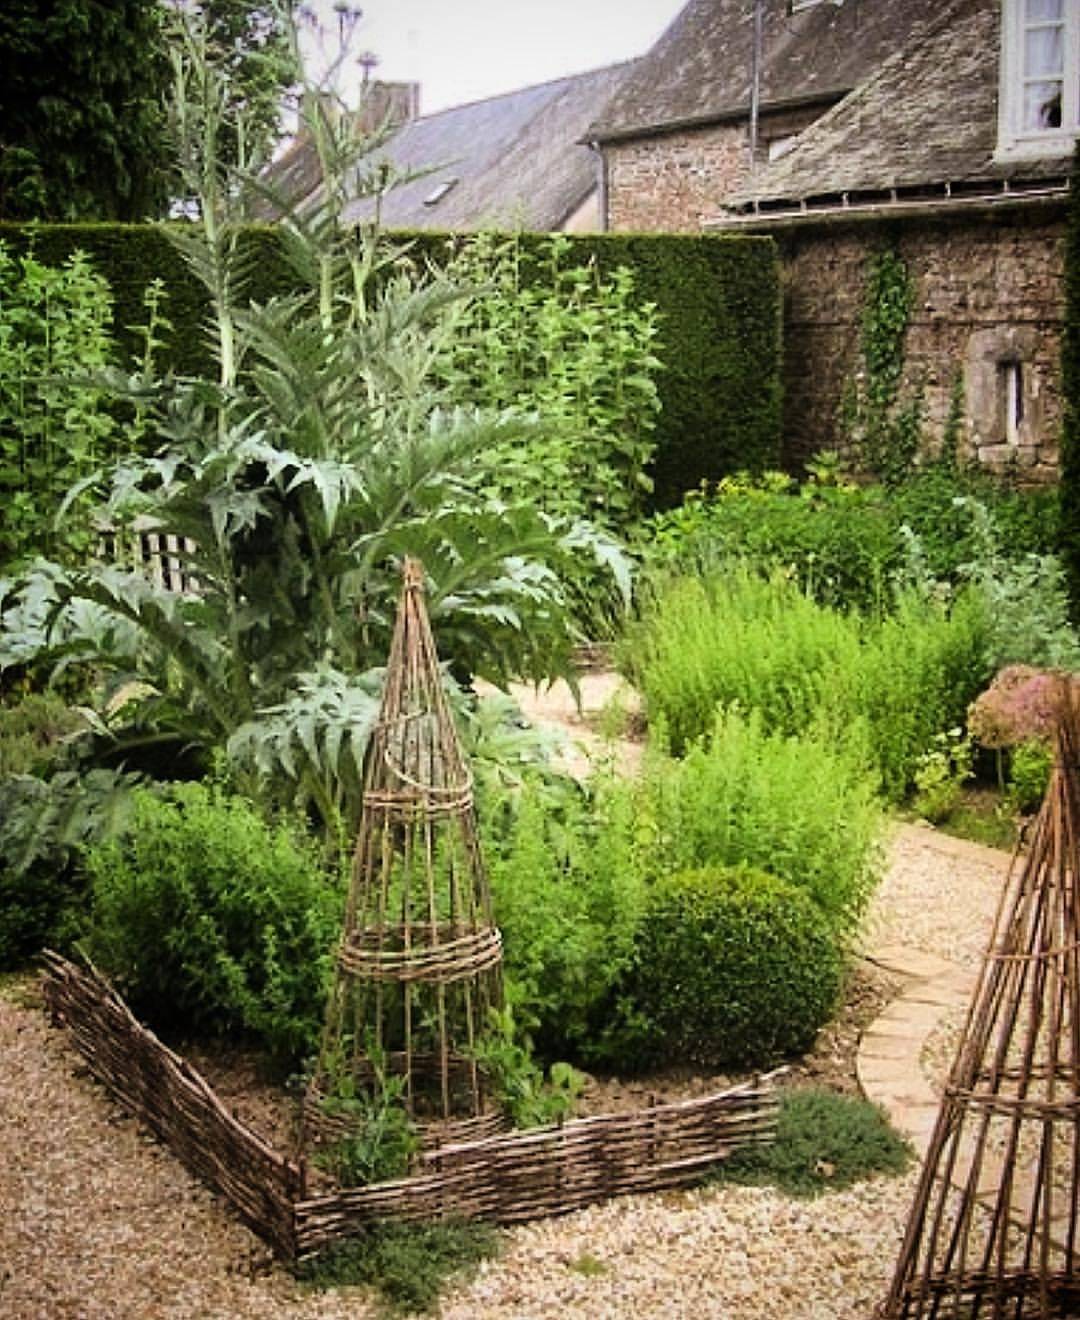 A French Inspired Kitchen Garden